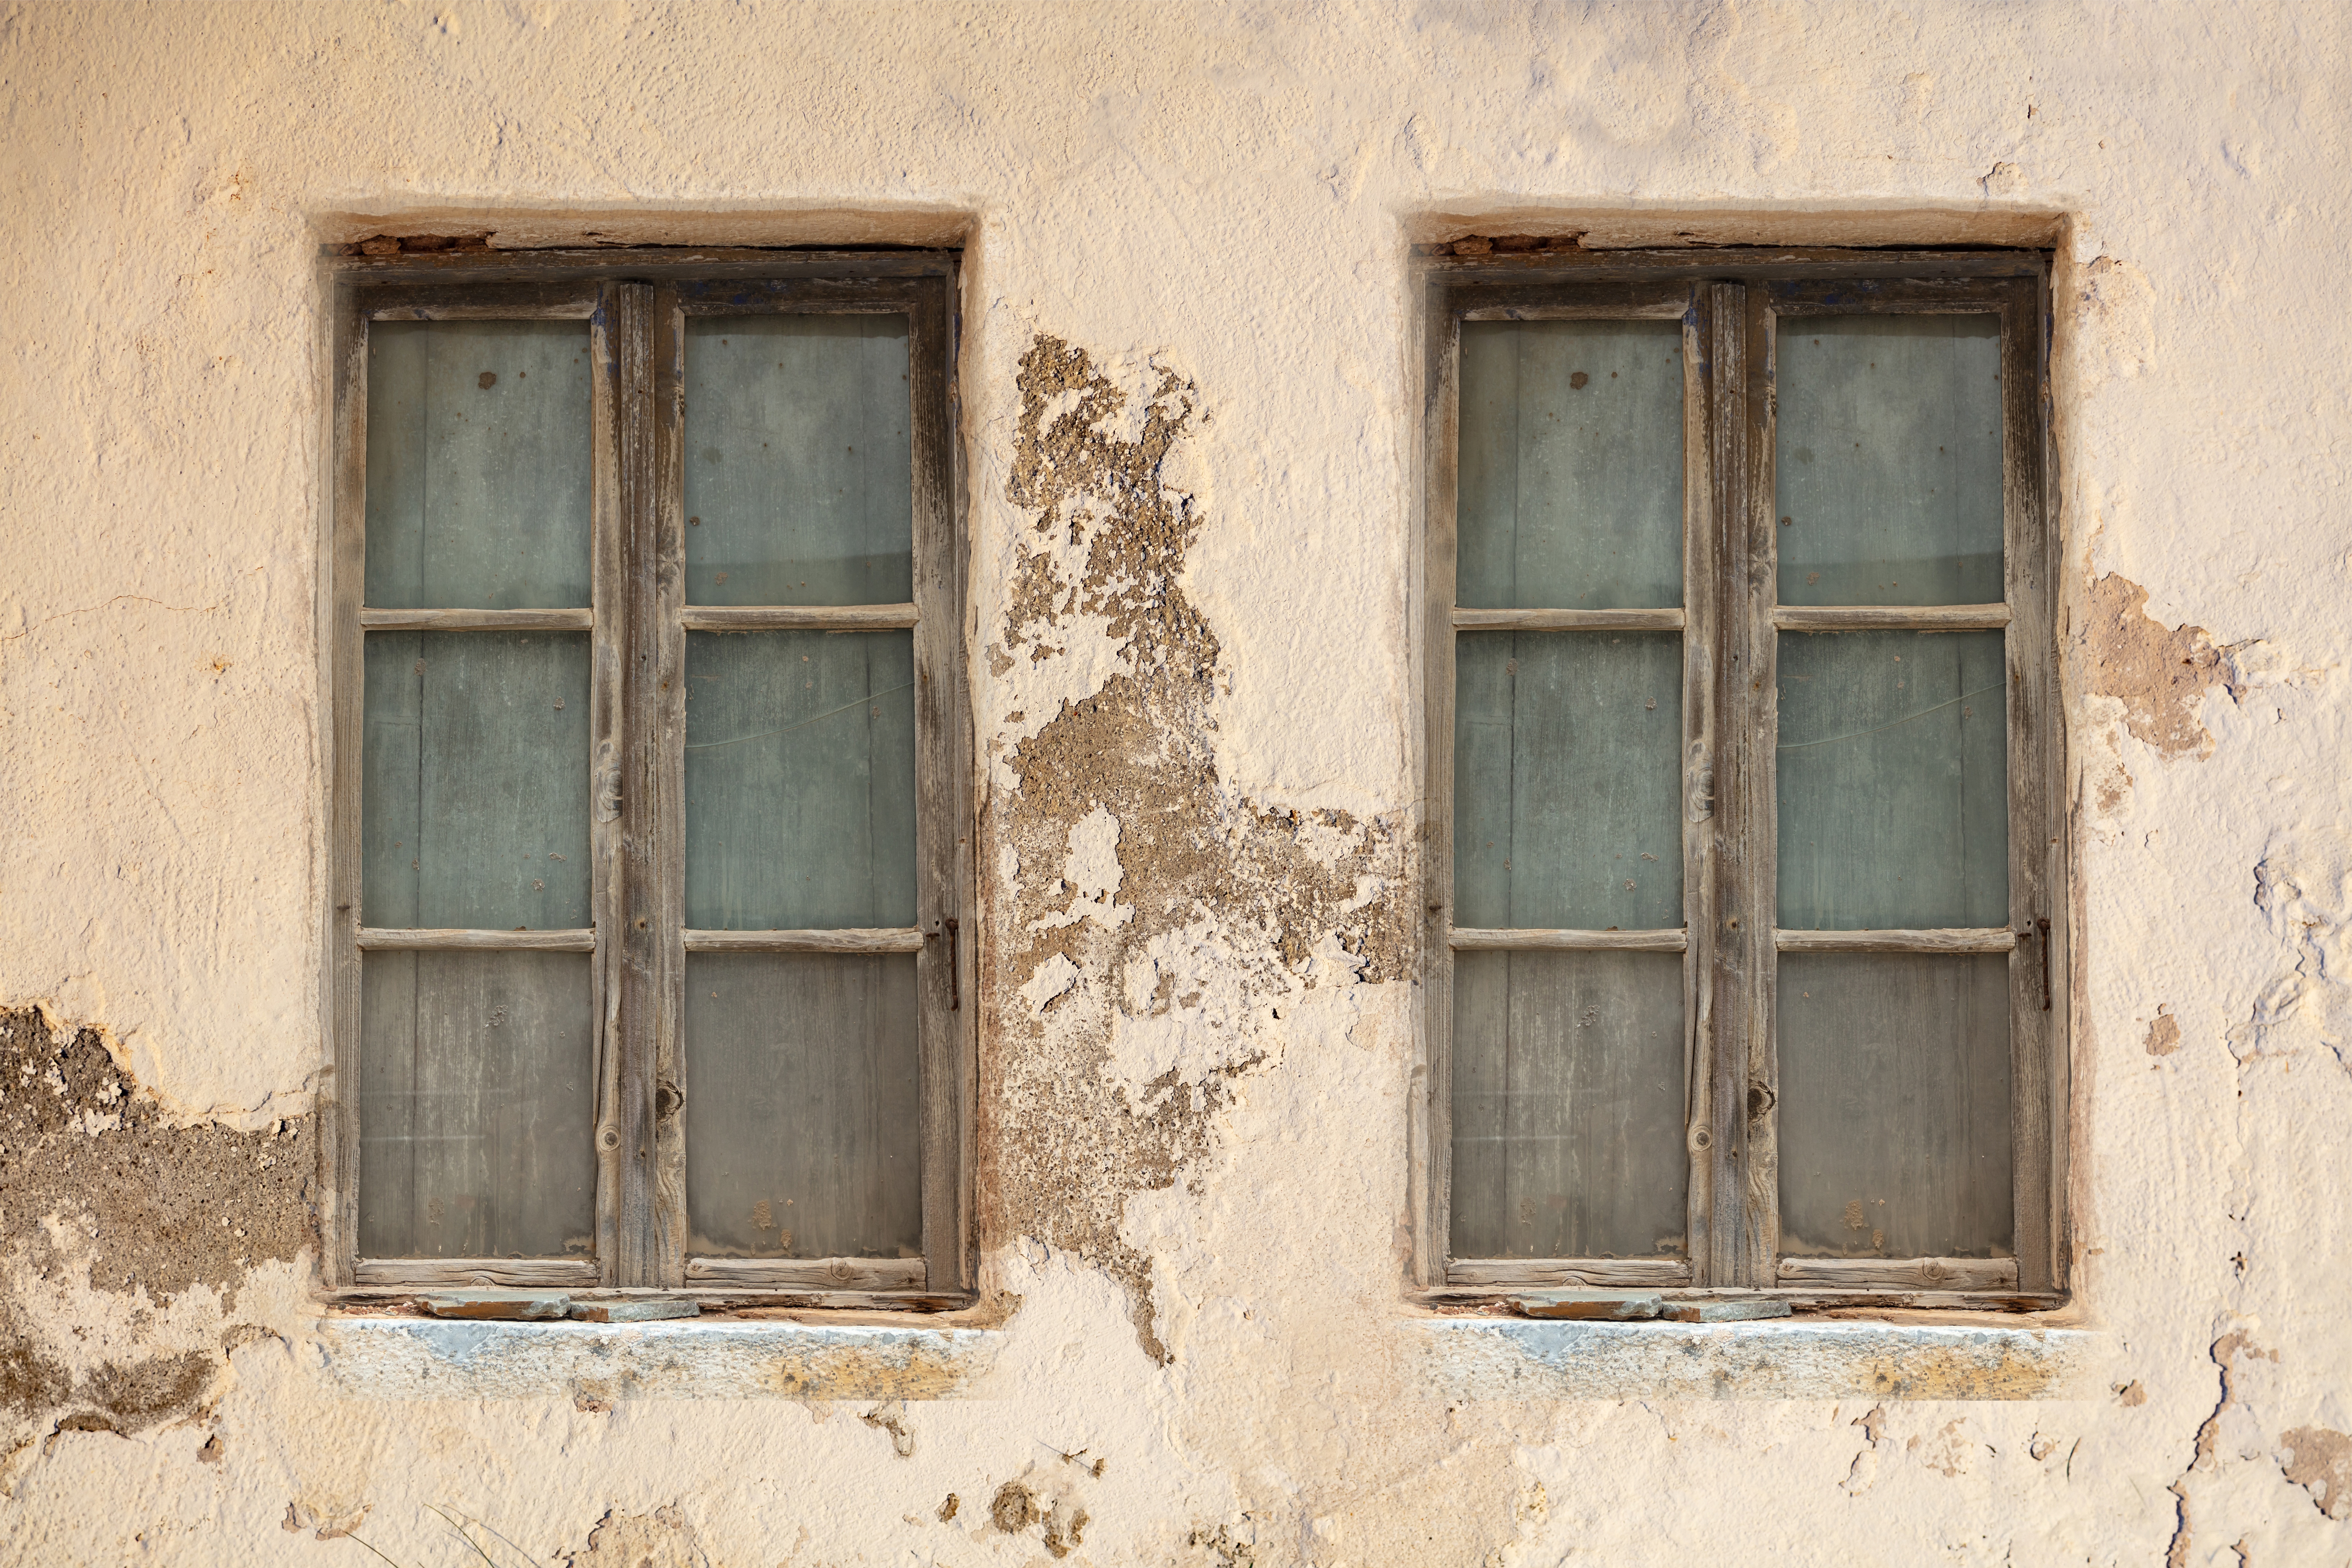 image de logement insalubre avec des murs abîmés, bois dans les fenêtres